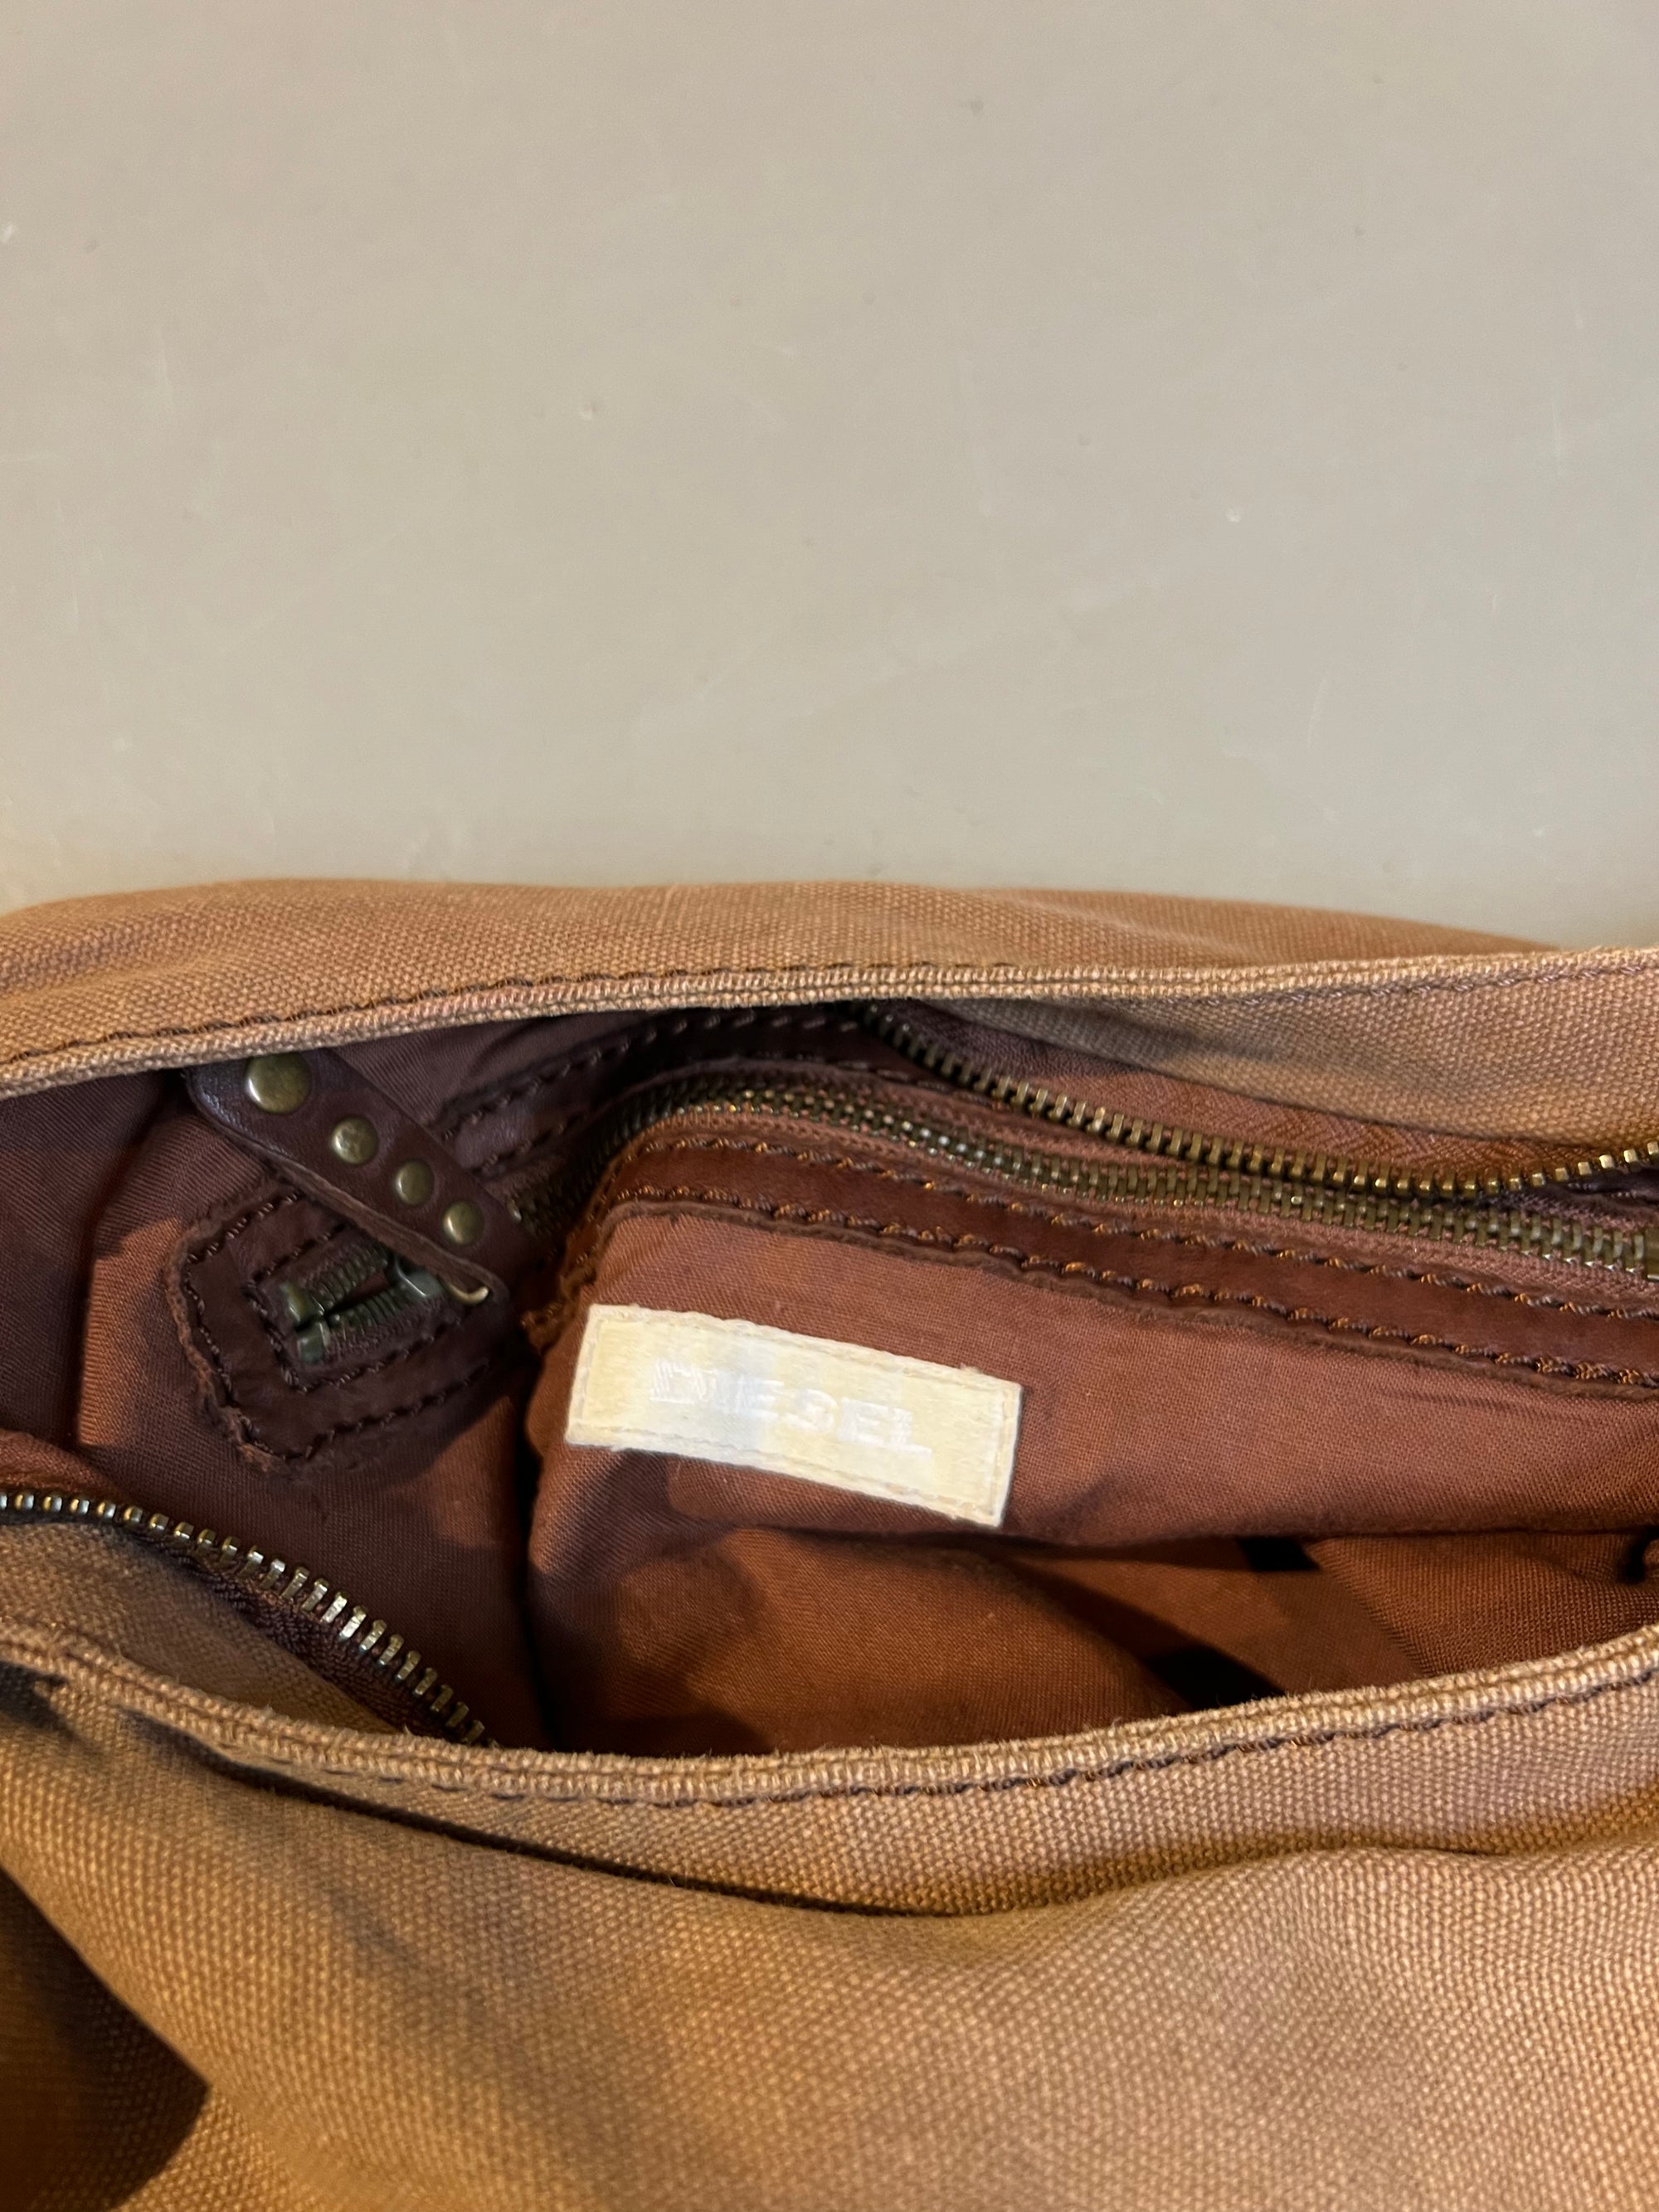 Produktbild der Vintage Brown Diesel  Slingbag von der innen Tasche.